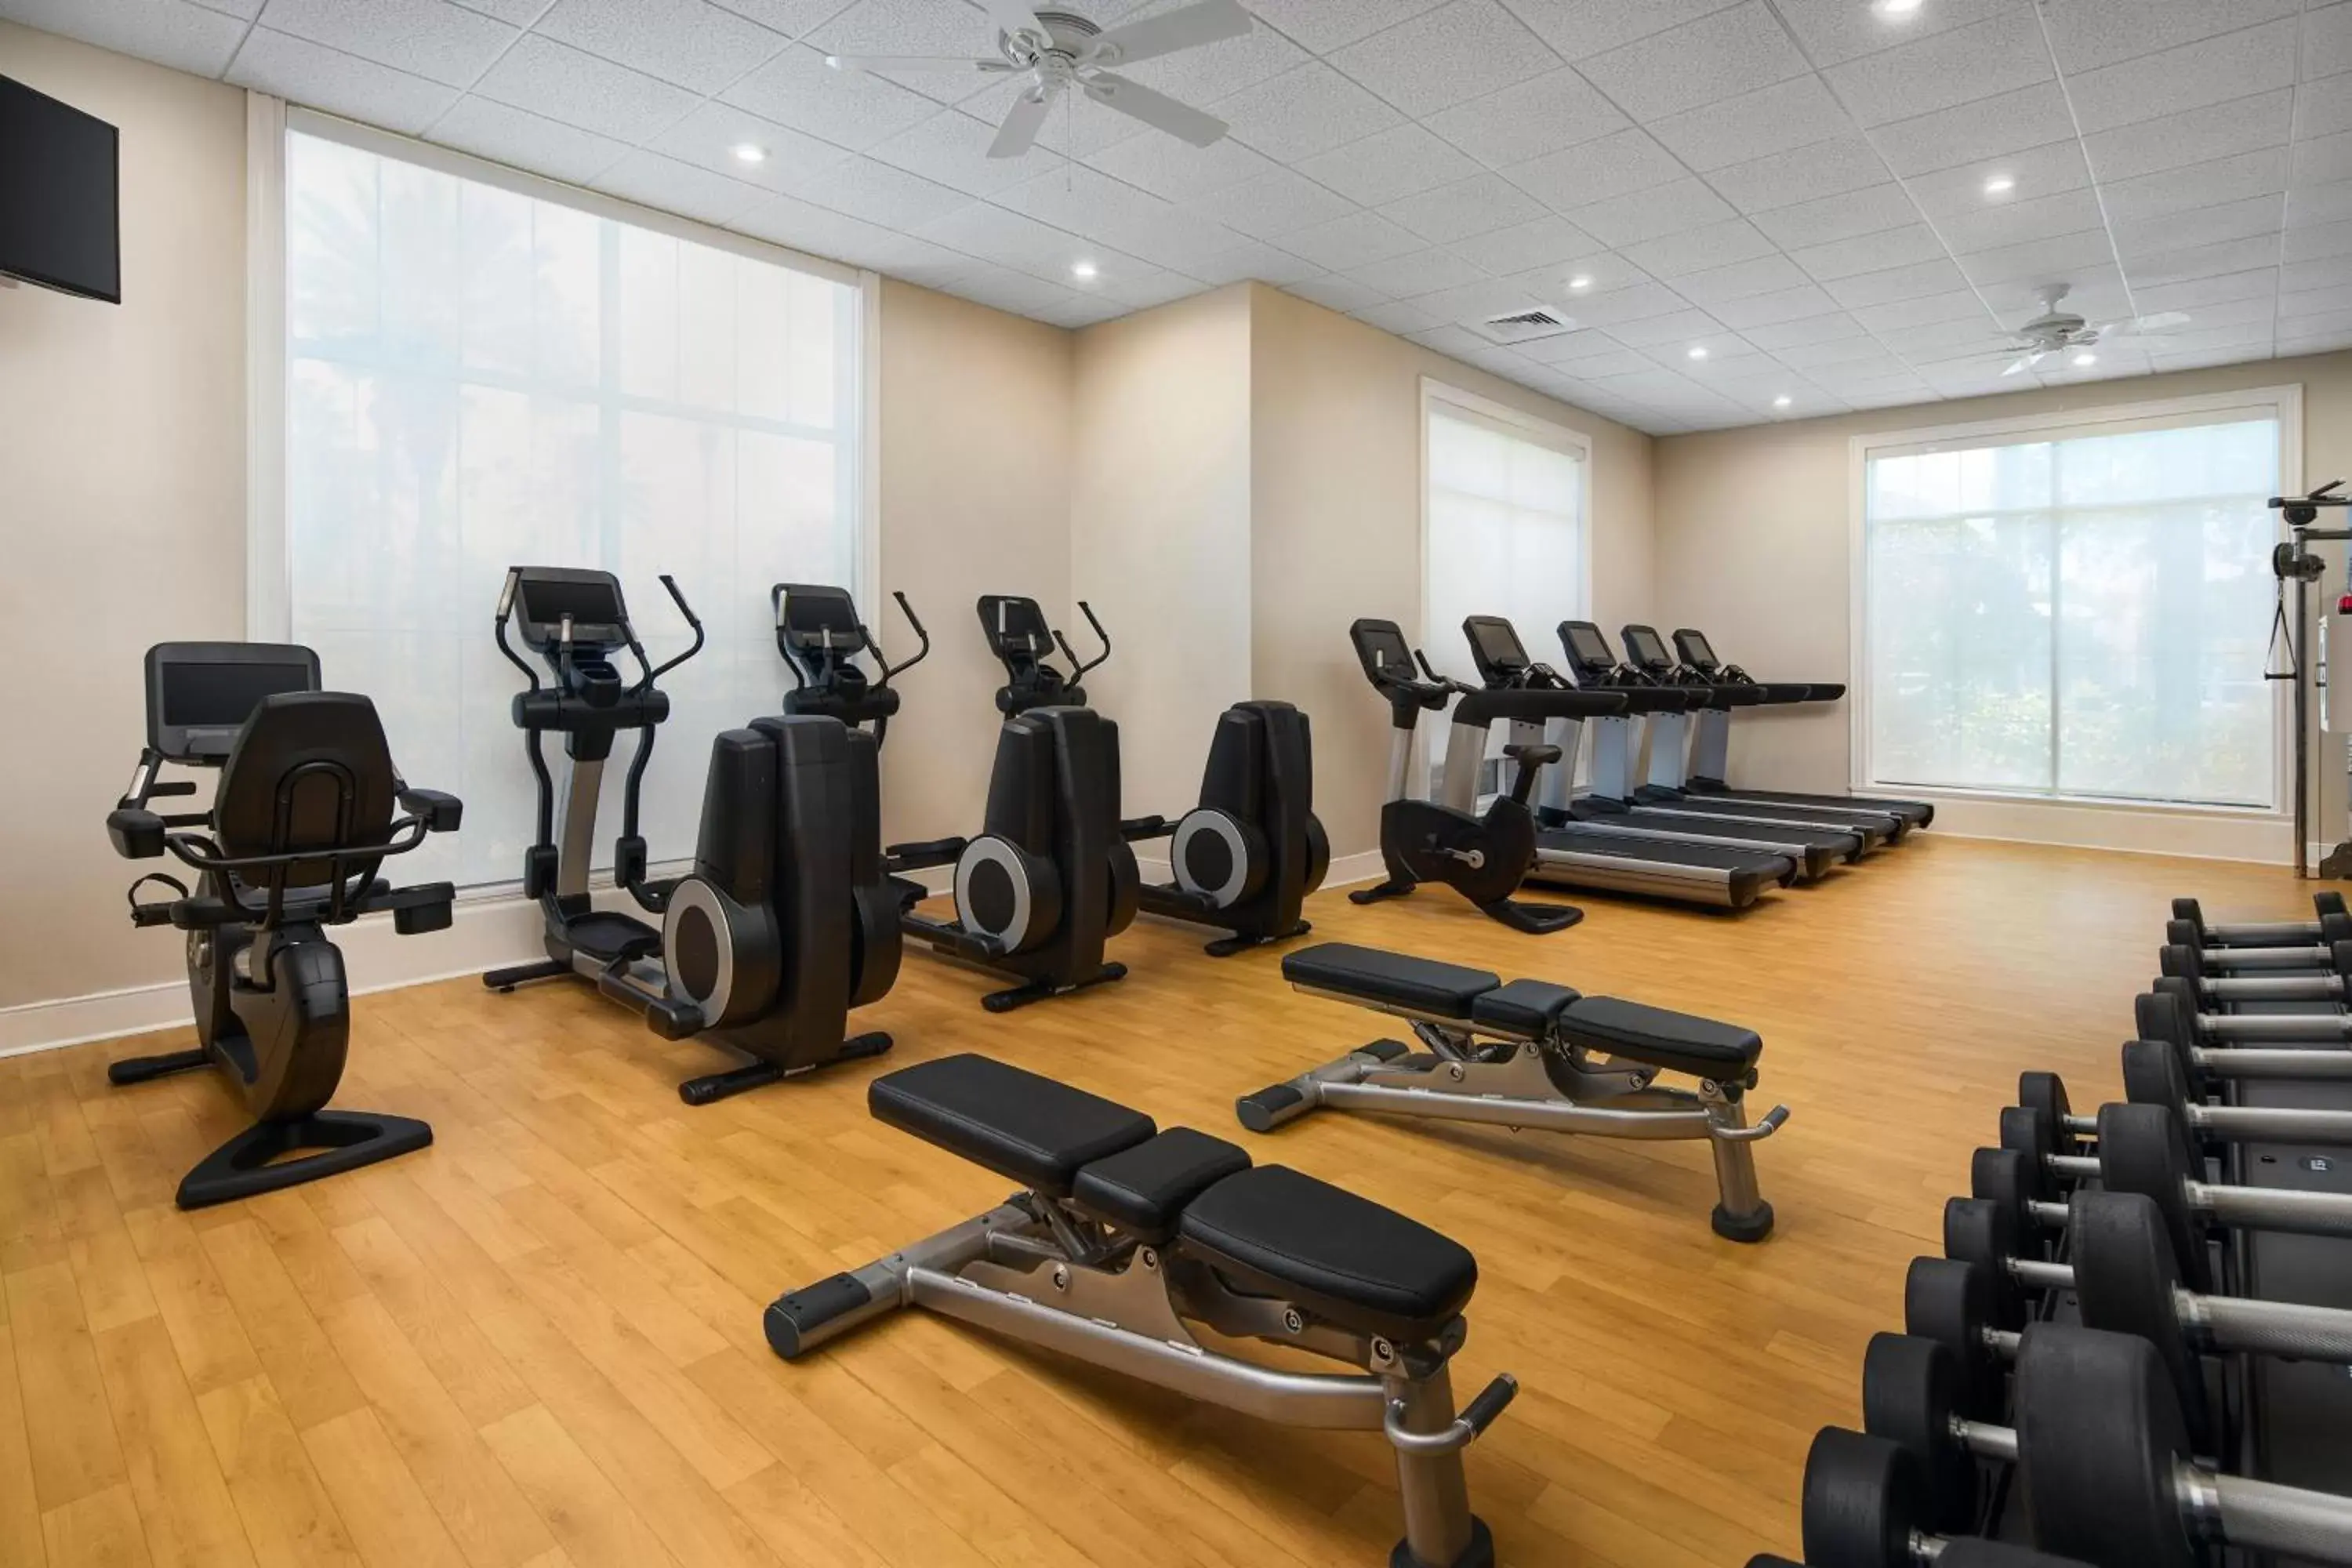 Fitness centre/facilities, Fitness Center/Facilities in Sheraton Vistana Villages Resort Villas, I-Drive Orlando